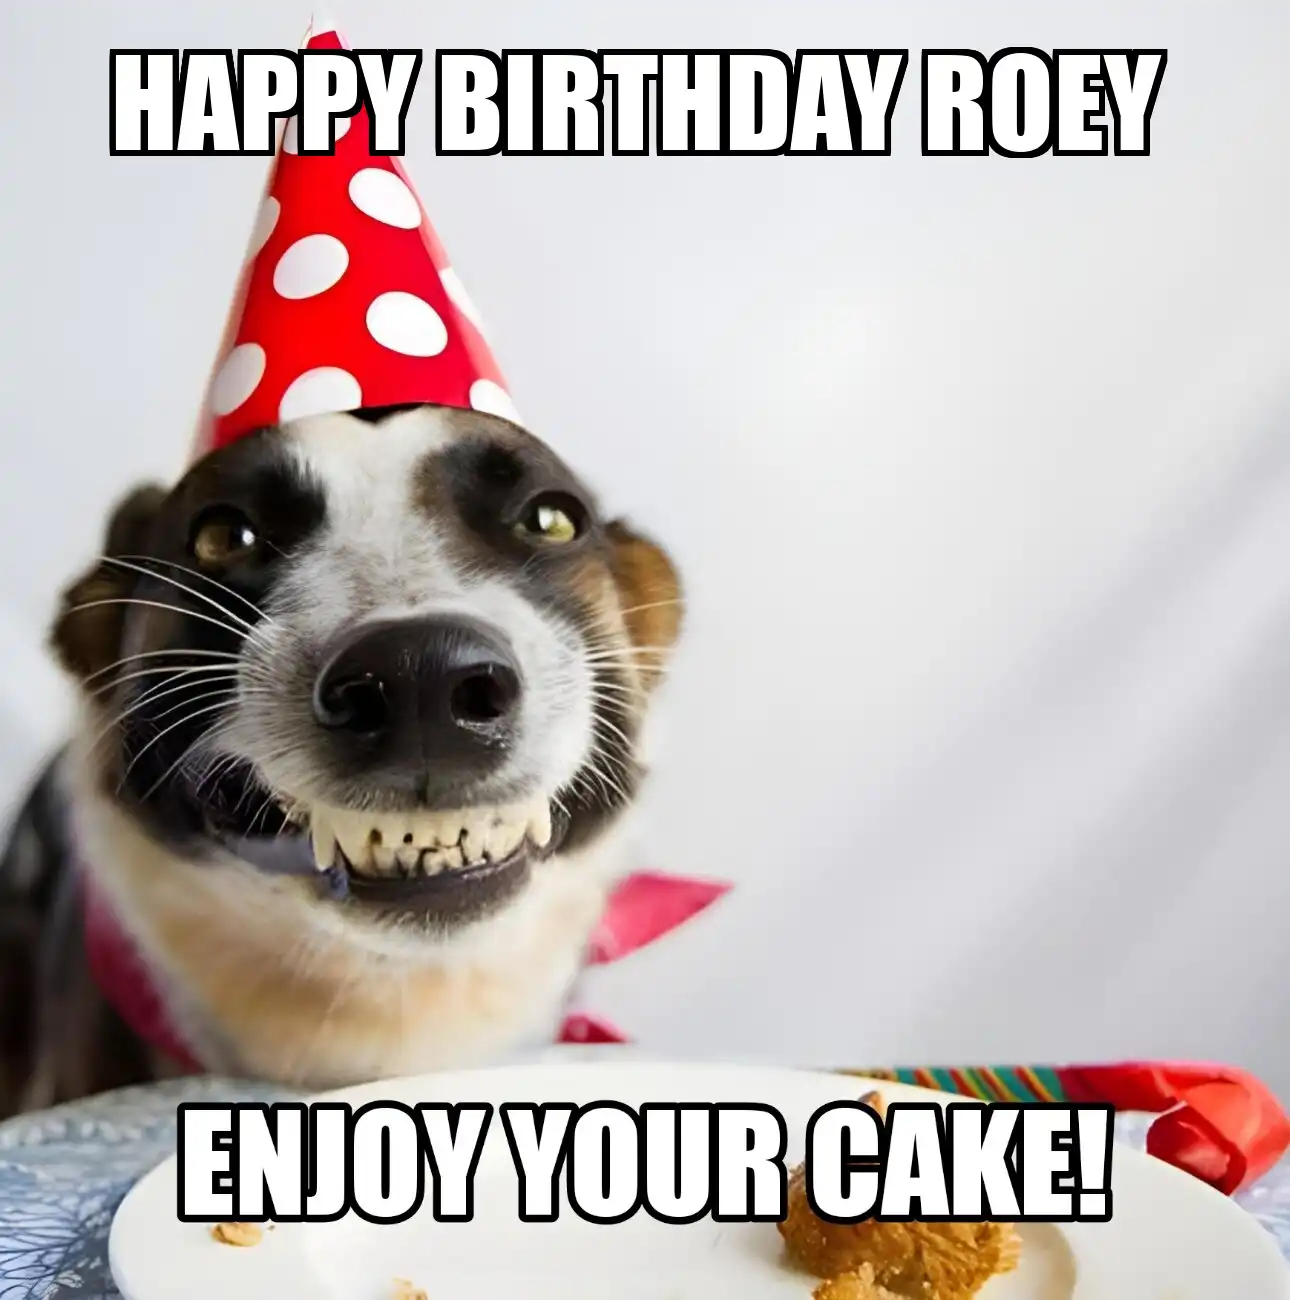 Happy Birthday Roey Enjoy Your Cake Dog Meme